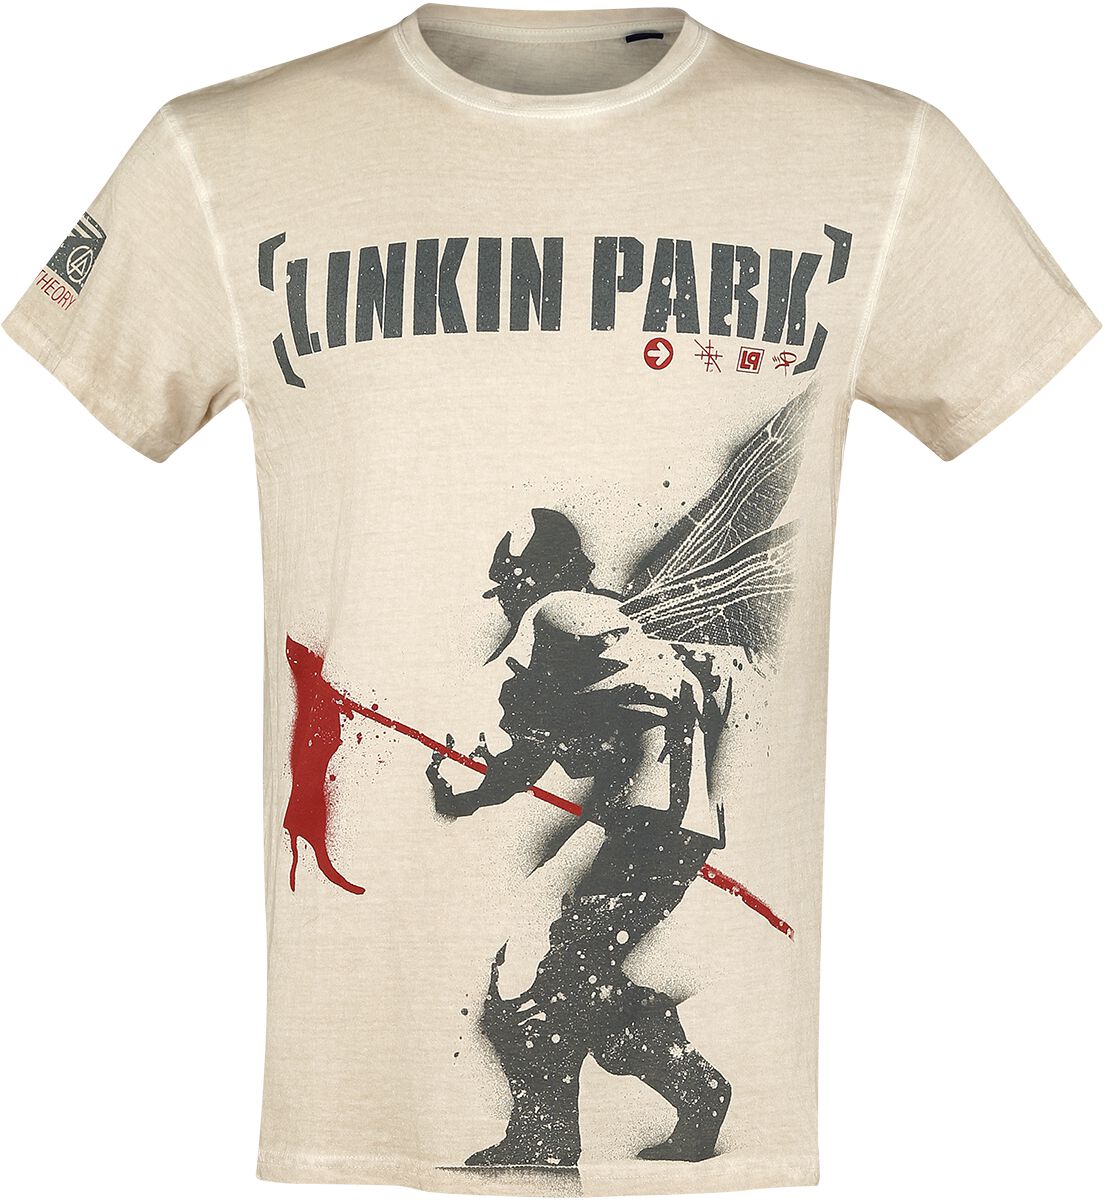 Linkin Park T-Shirt - Hybrid Theory - M bis 4XL - für Männer - Größe XL - altweiß  - EMP exklusives Merchandise!